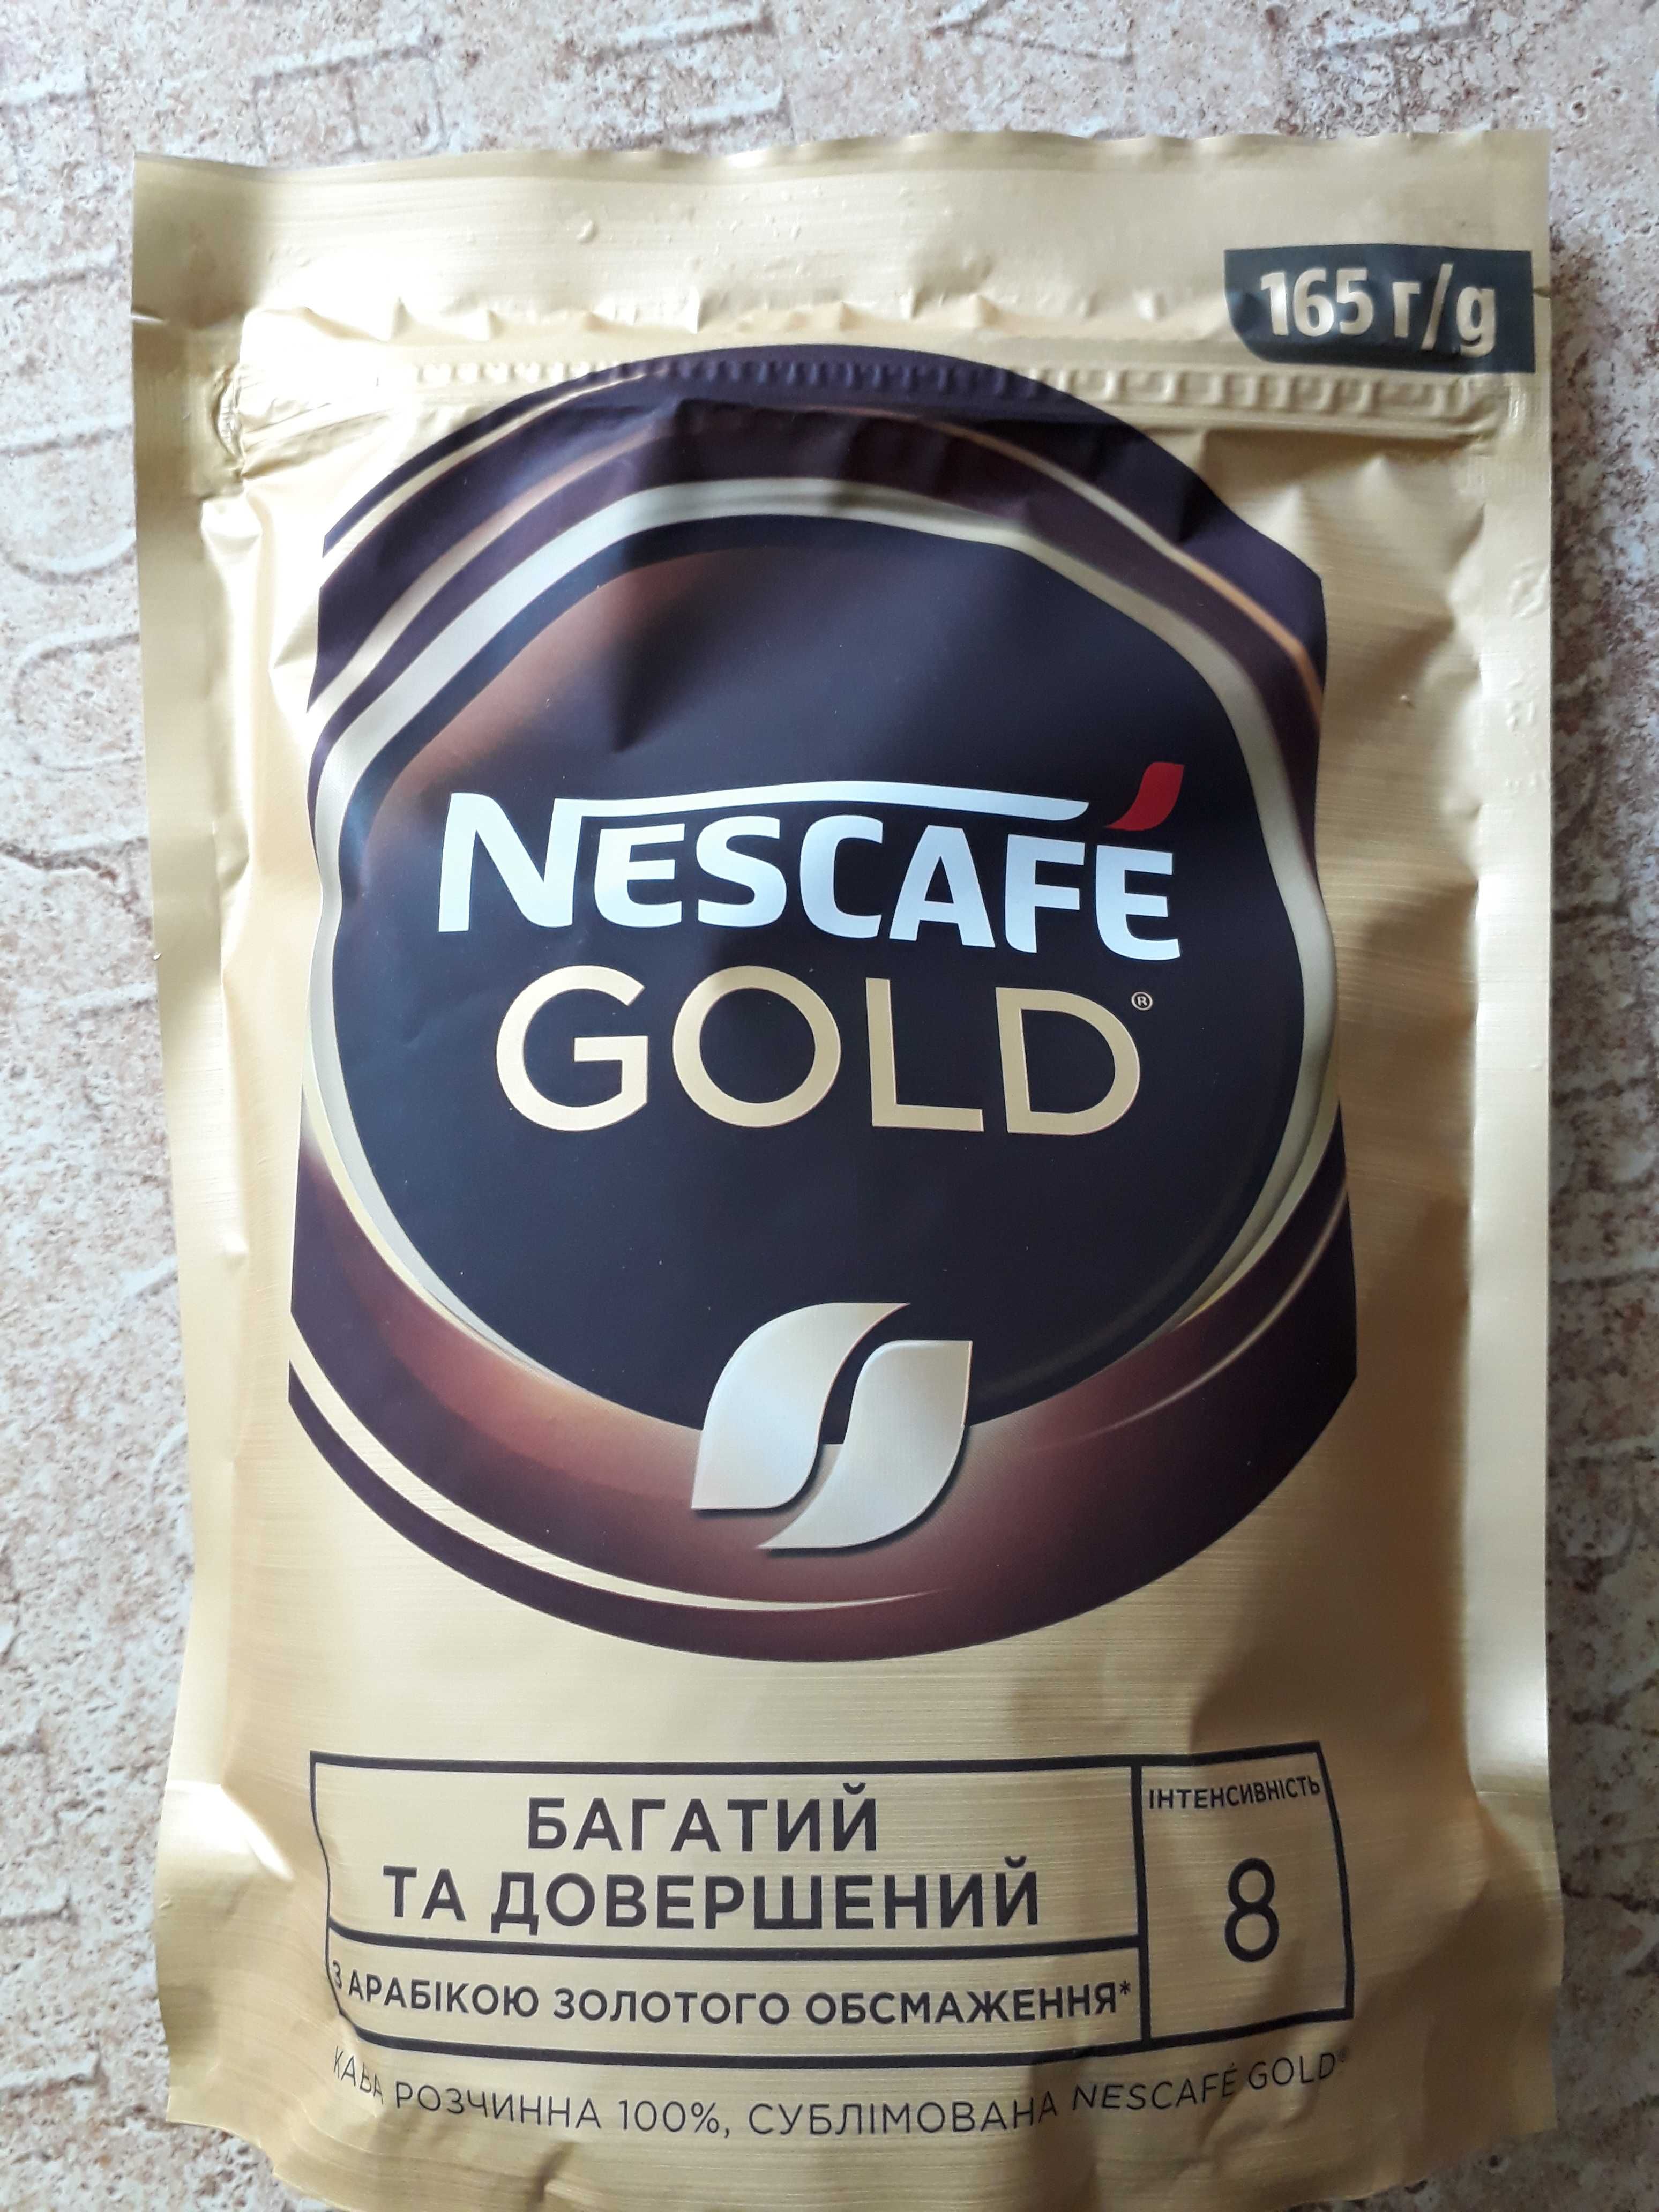 Кава розчинна " Nescafe GOLD " 165 г